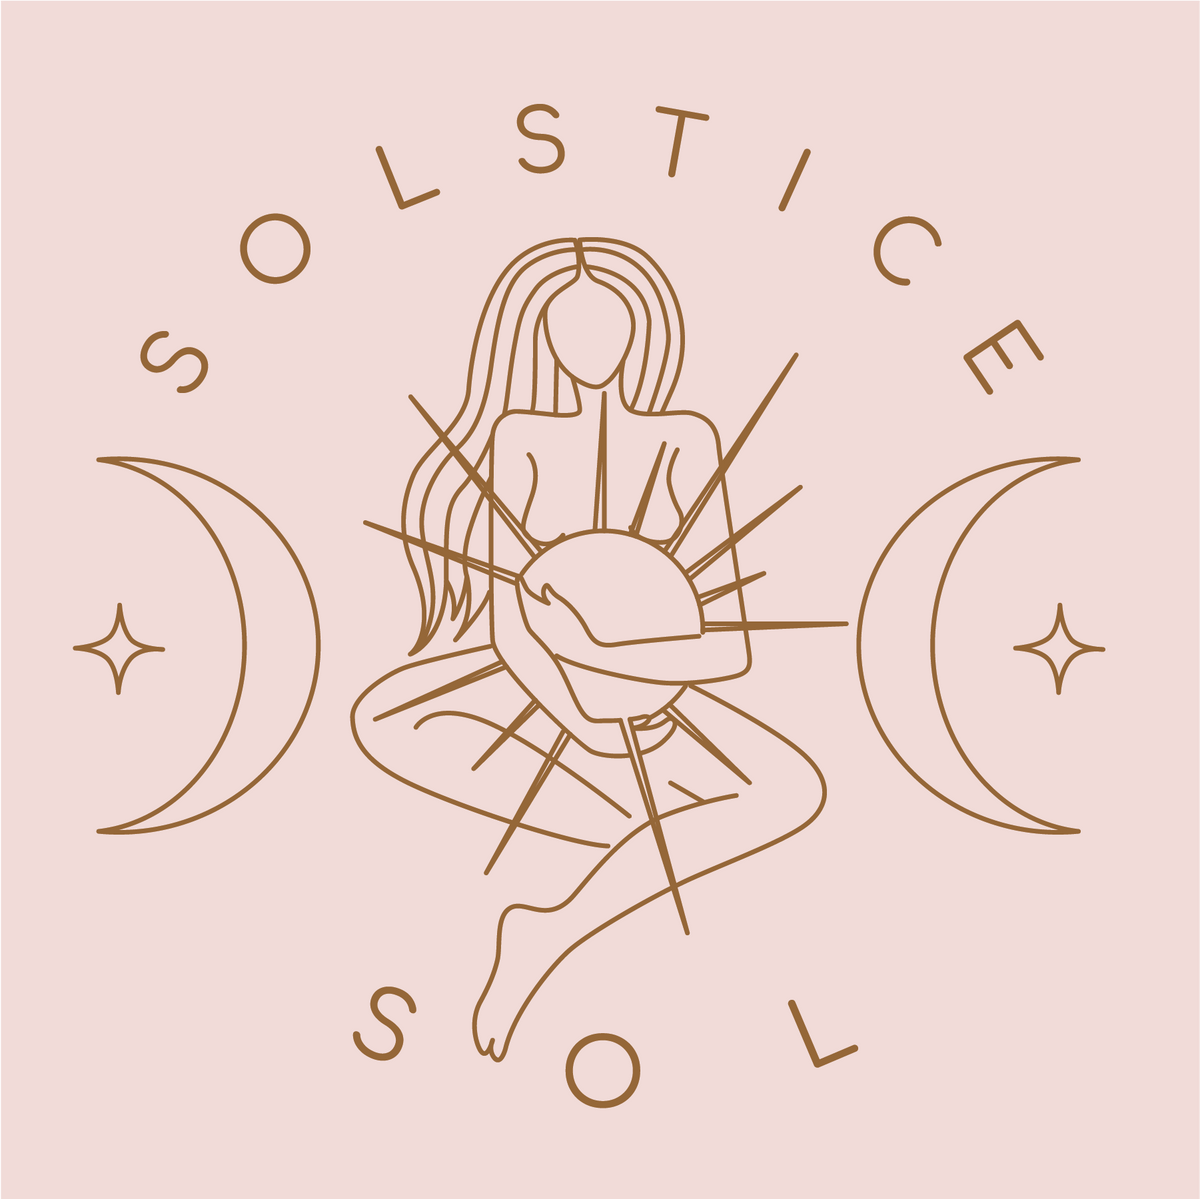 Solstice Sol